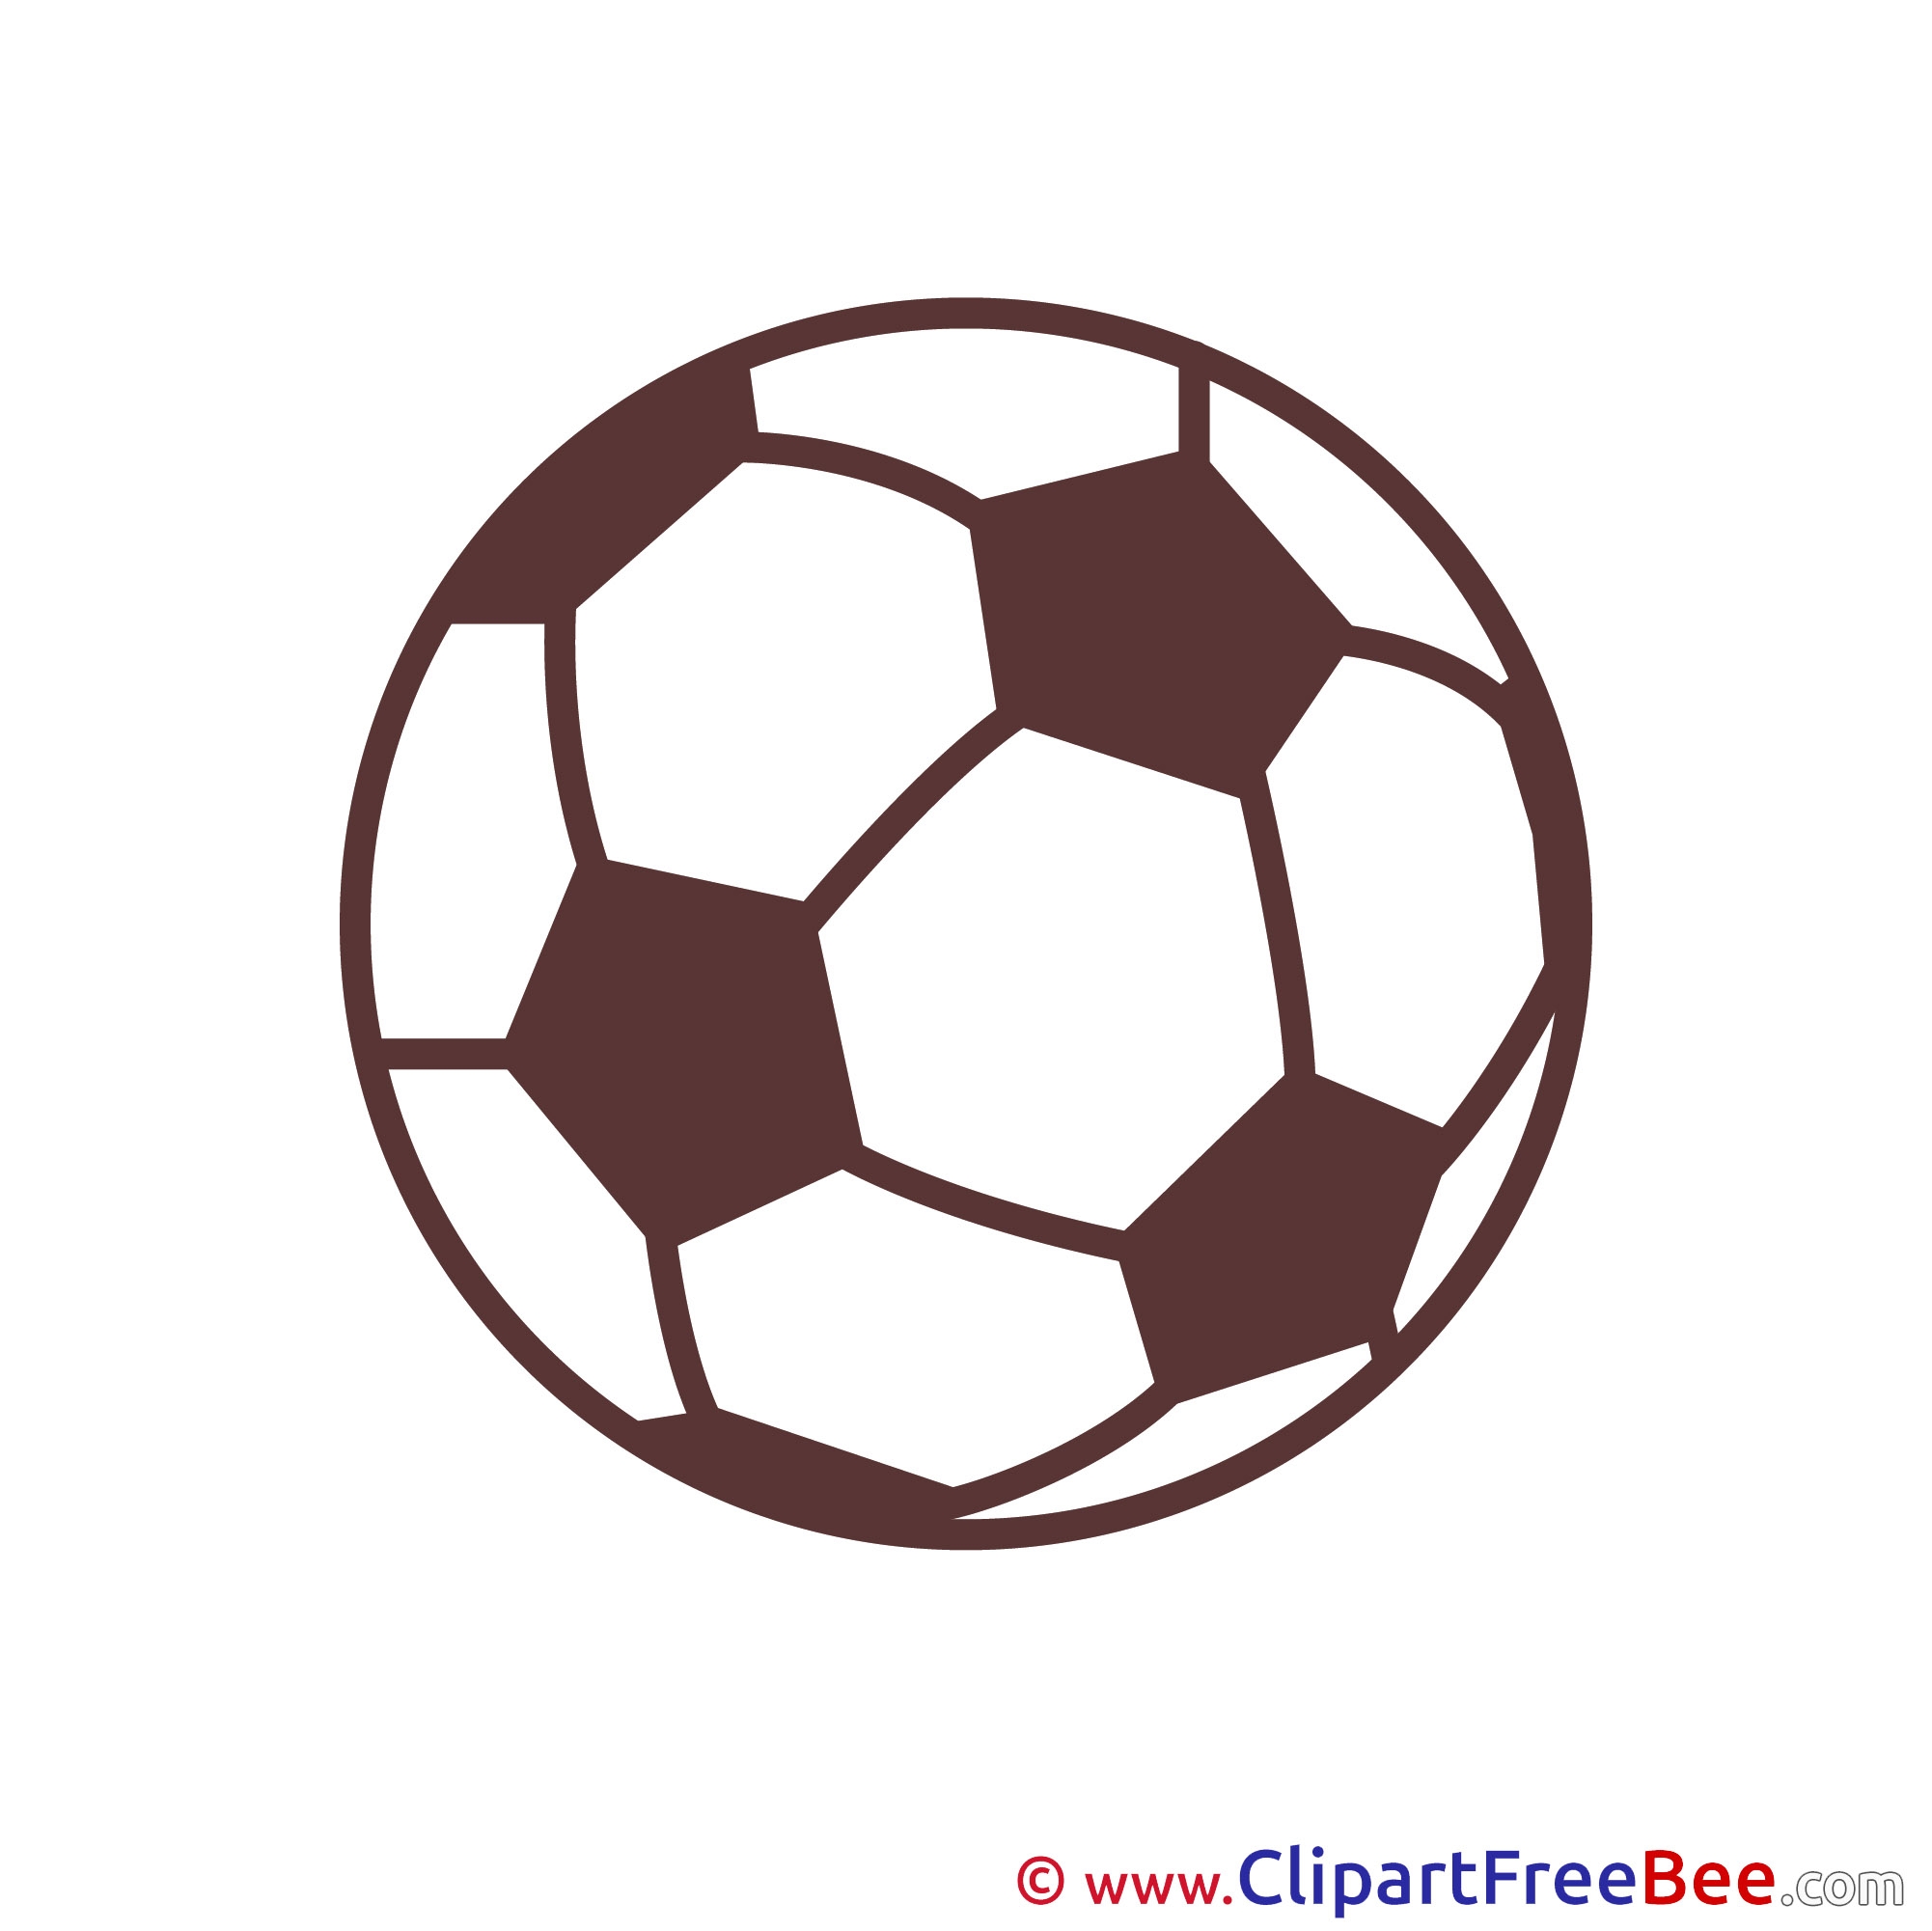 Футбольный мяч раскраска для детей